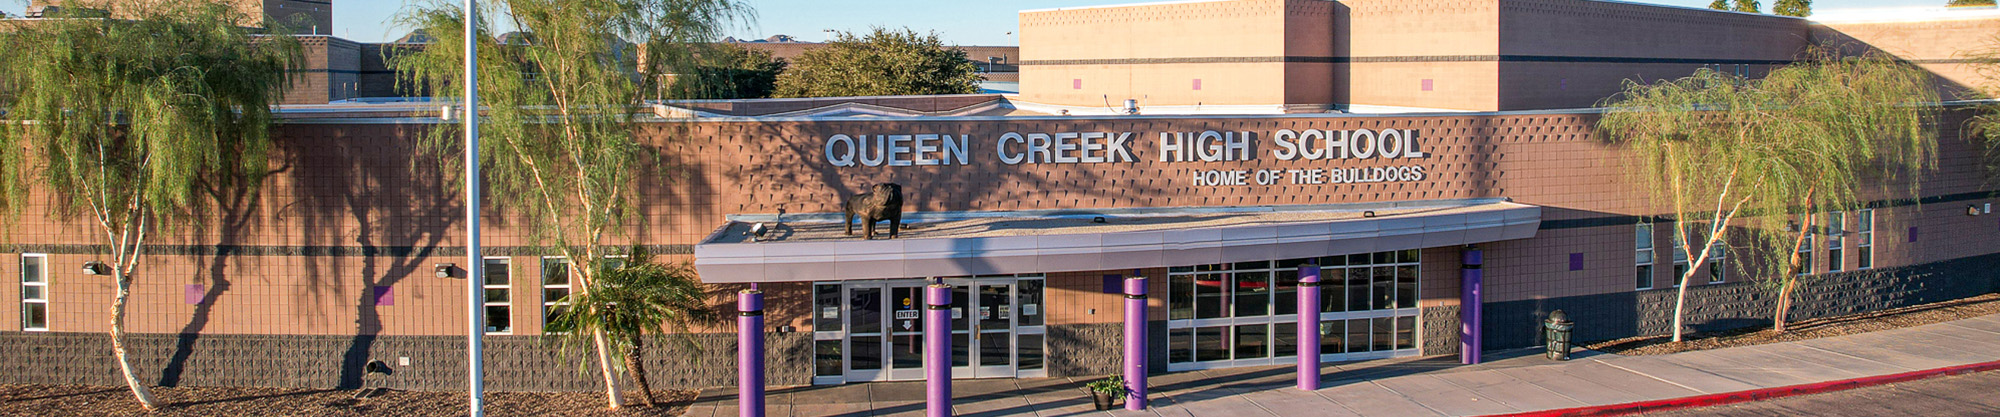 Front view of Queen Creek High School 